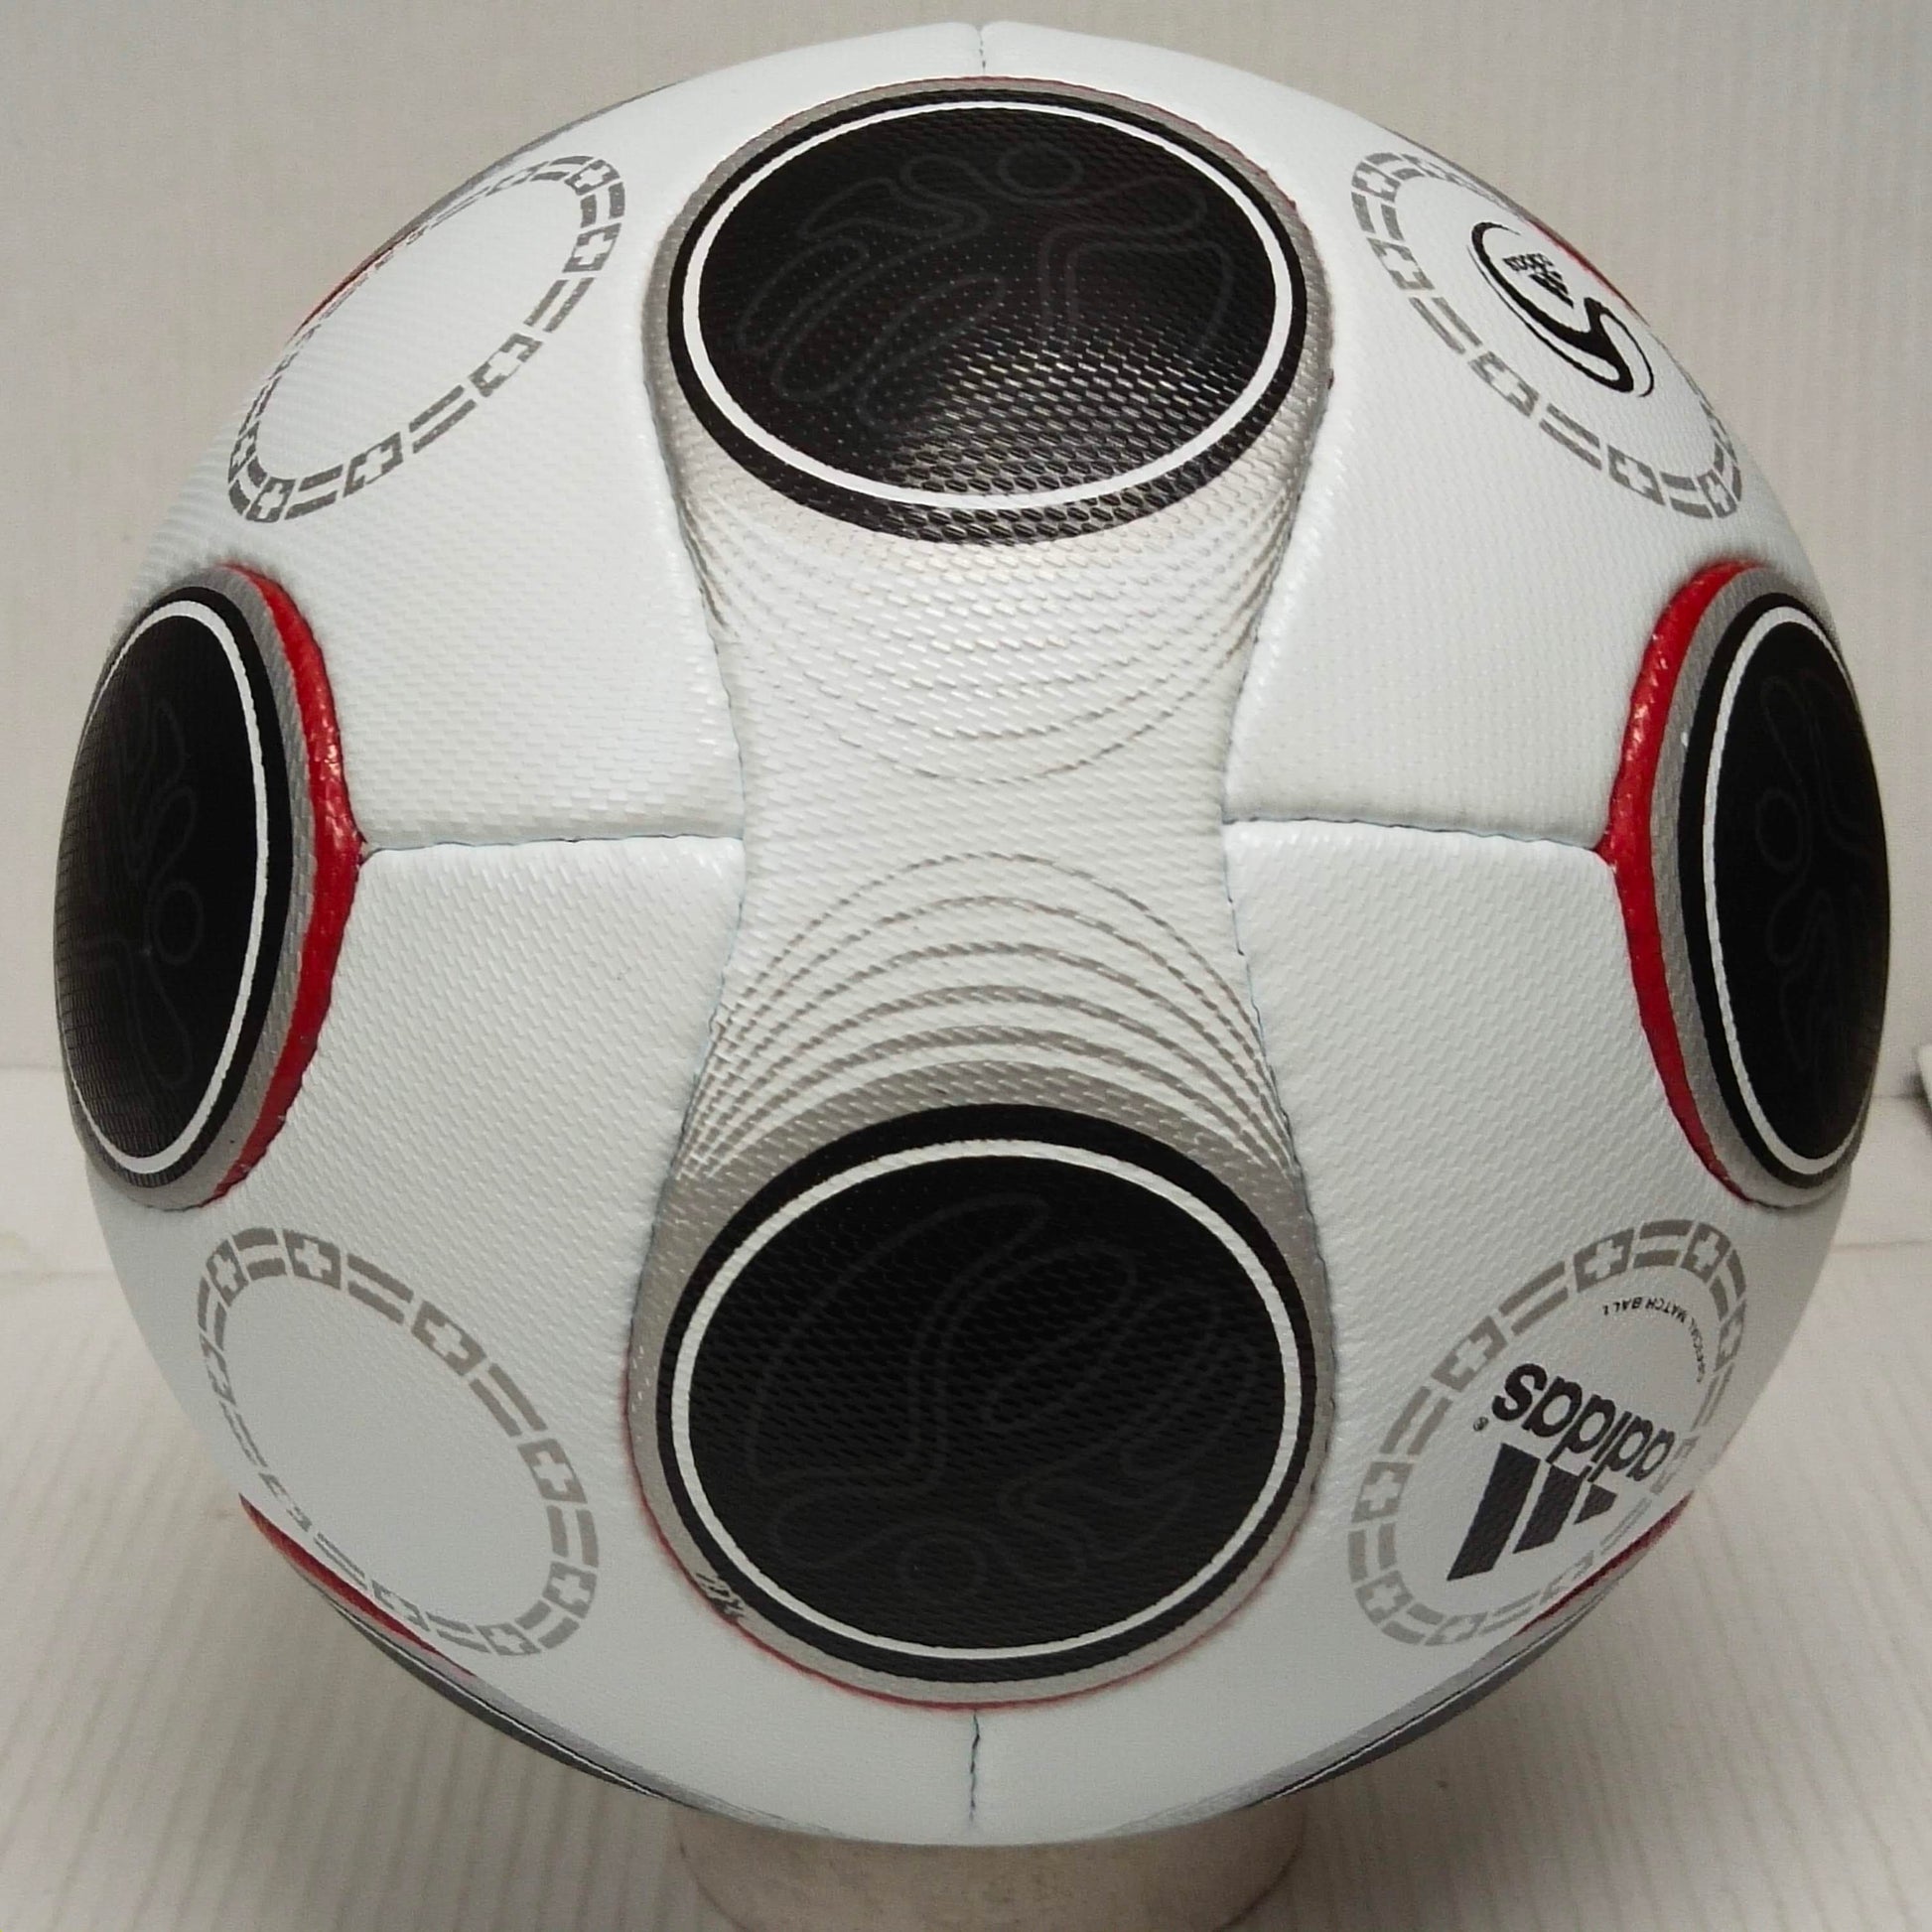 Adidas Europass | 2008 | UEFA Europa League | Official Match Ball | Size 5 06